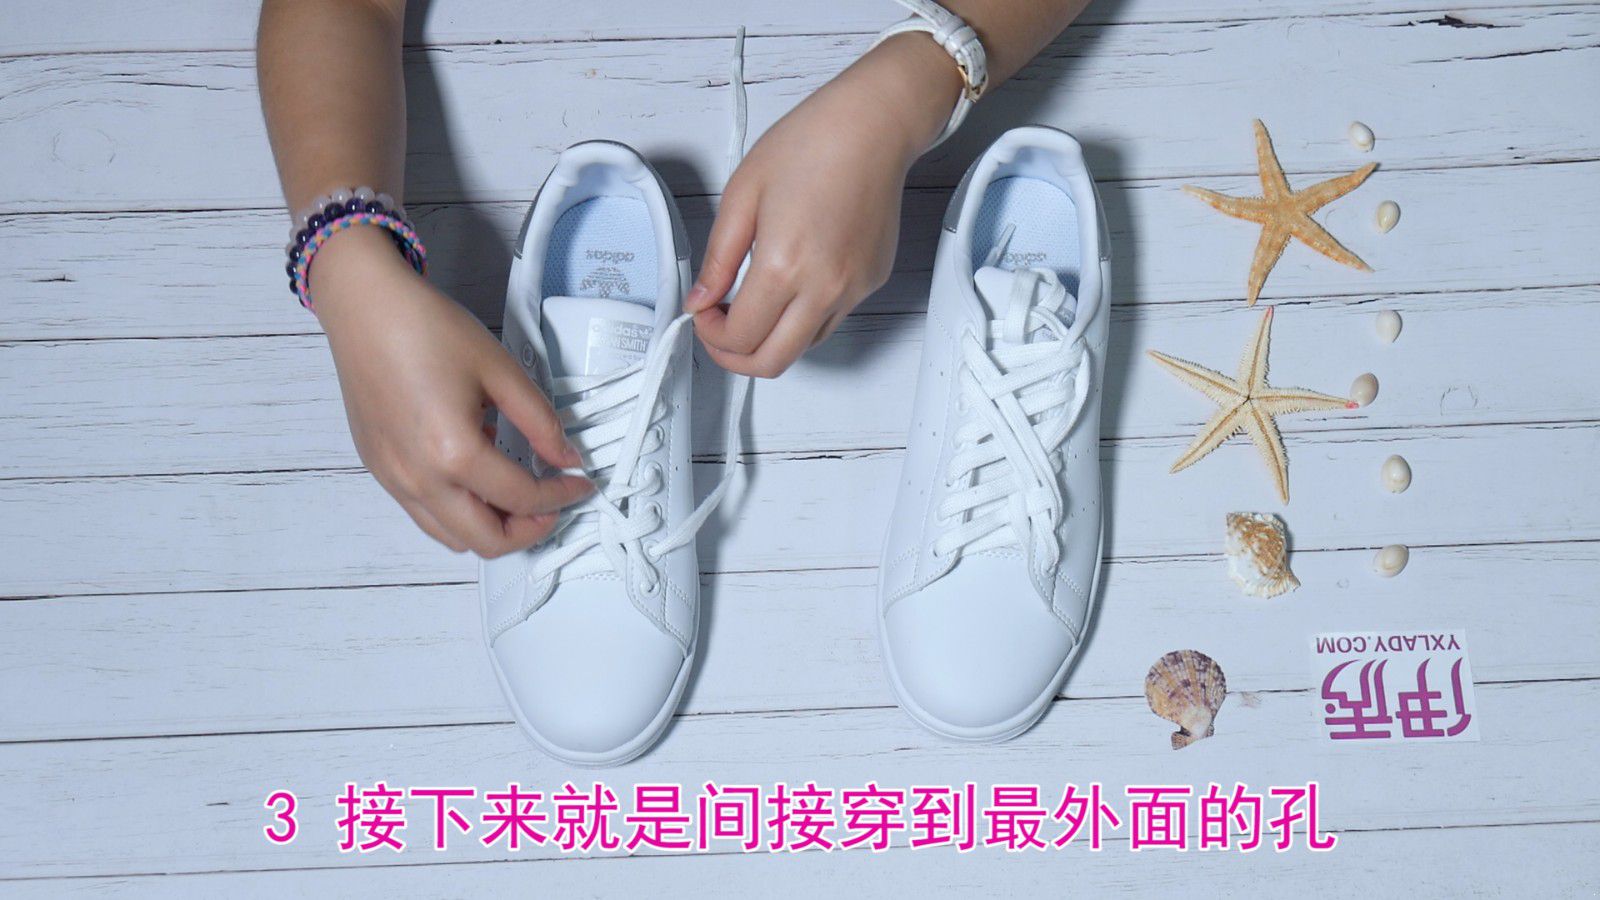 鞋带的系法 怎么系才漂亮呢_伊秀视频|yxlady.com